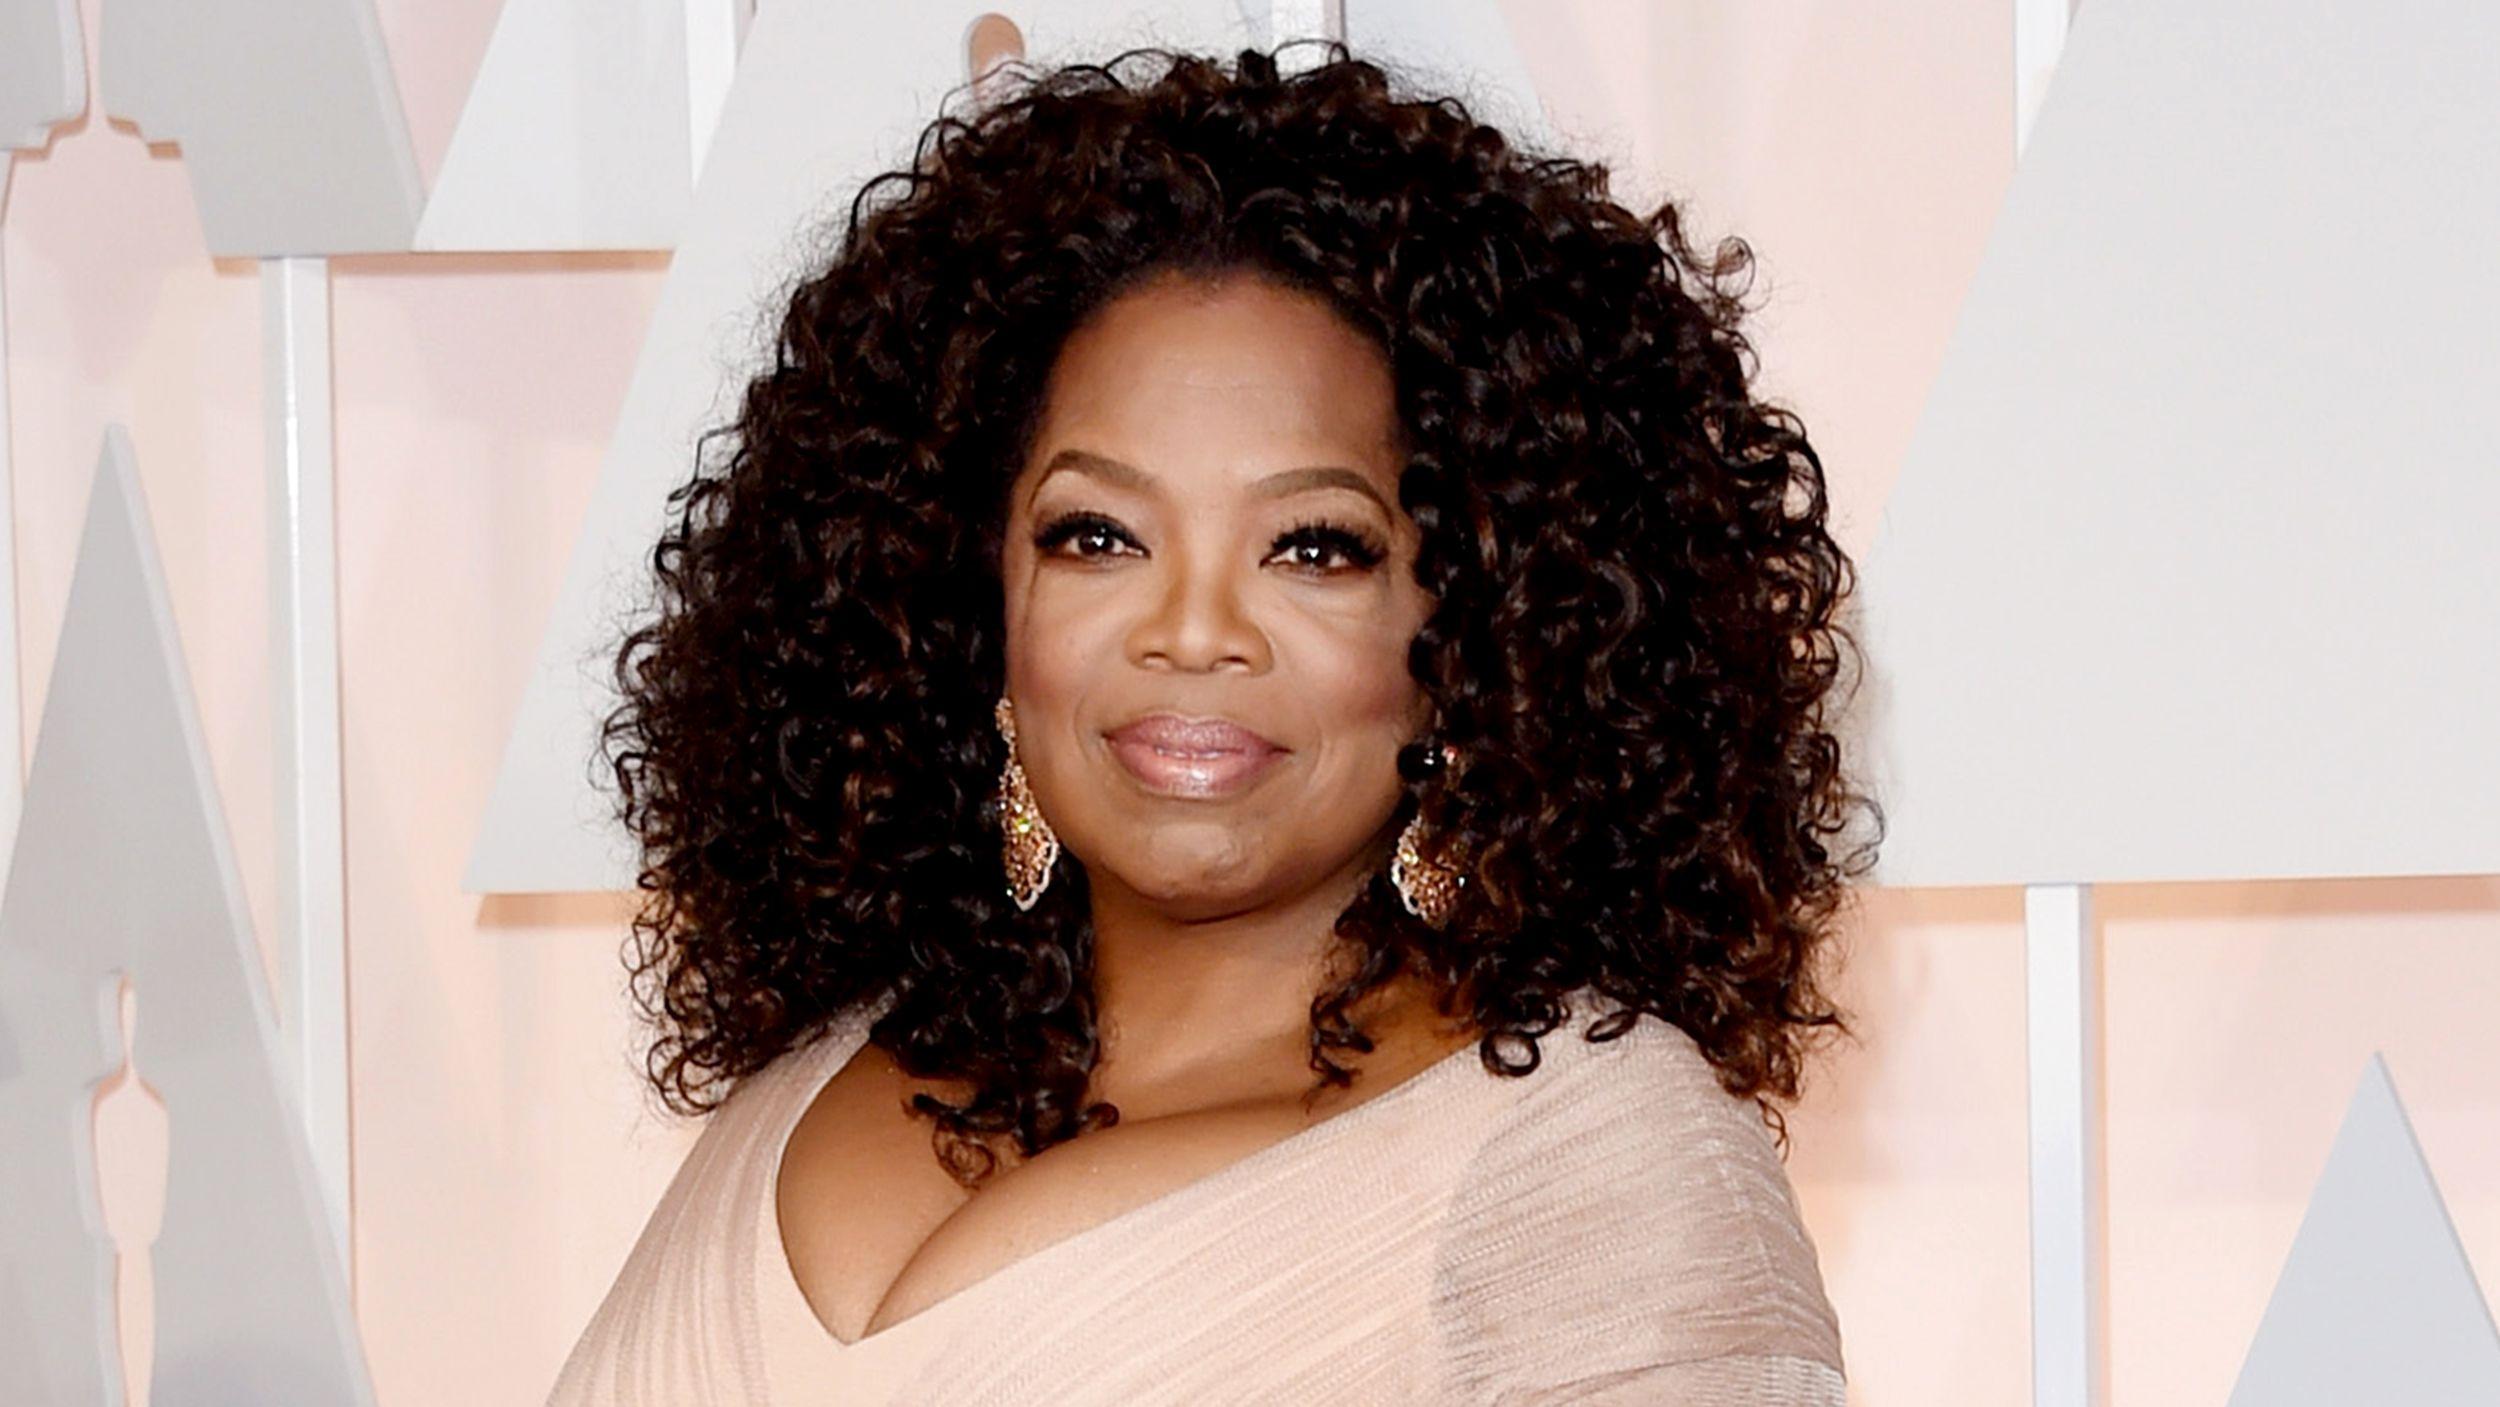 Oprah Winfrey Wallpaper High Quality